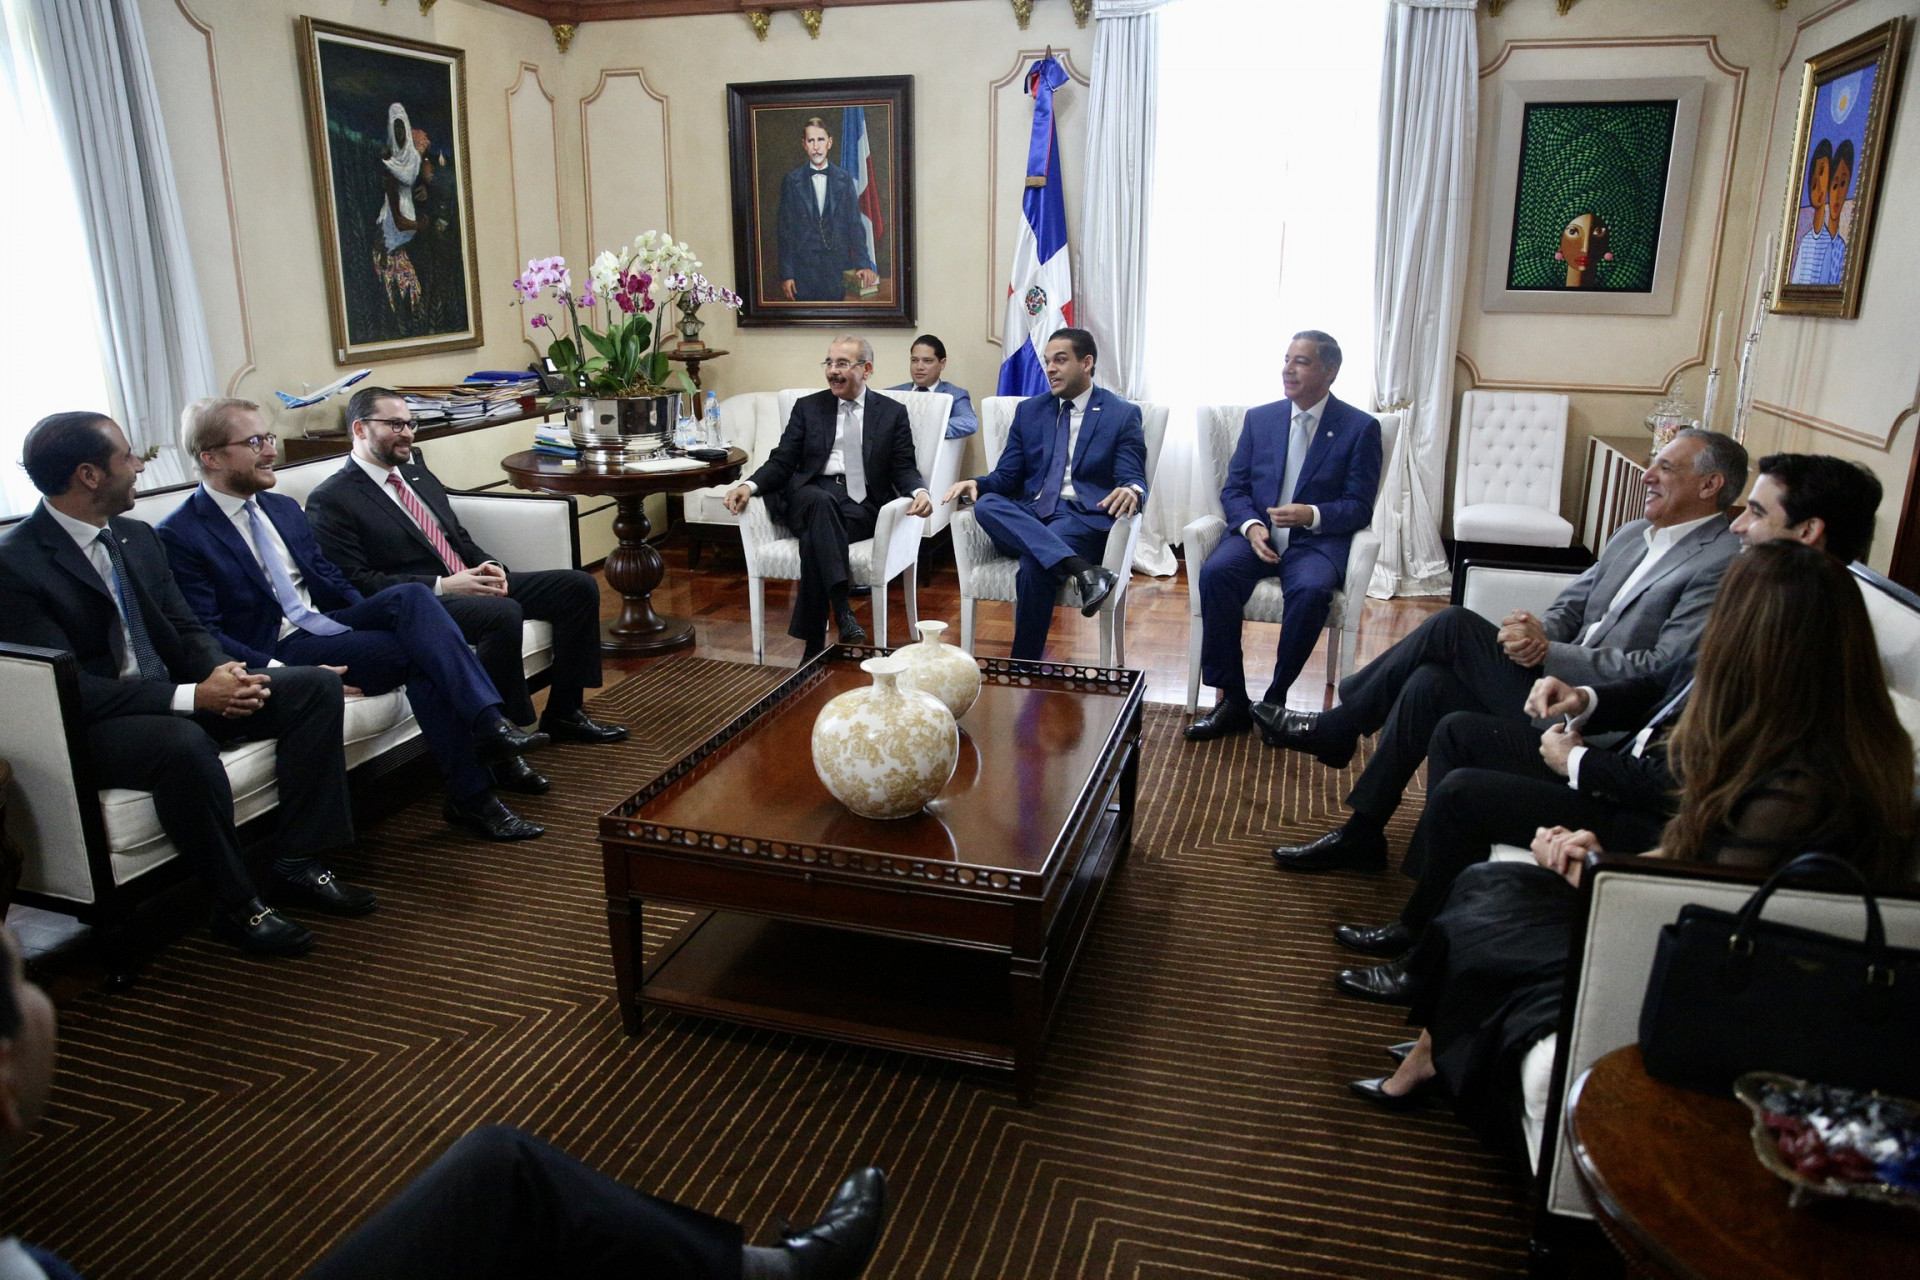 REPÚBLICA DOMINICANA: Directivos de la ANJE visitan a presidente Danilo Medina y valoran como completo discurso de rendición de cuentas